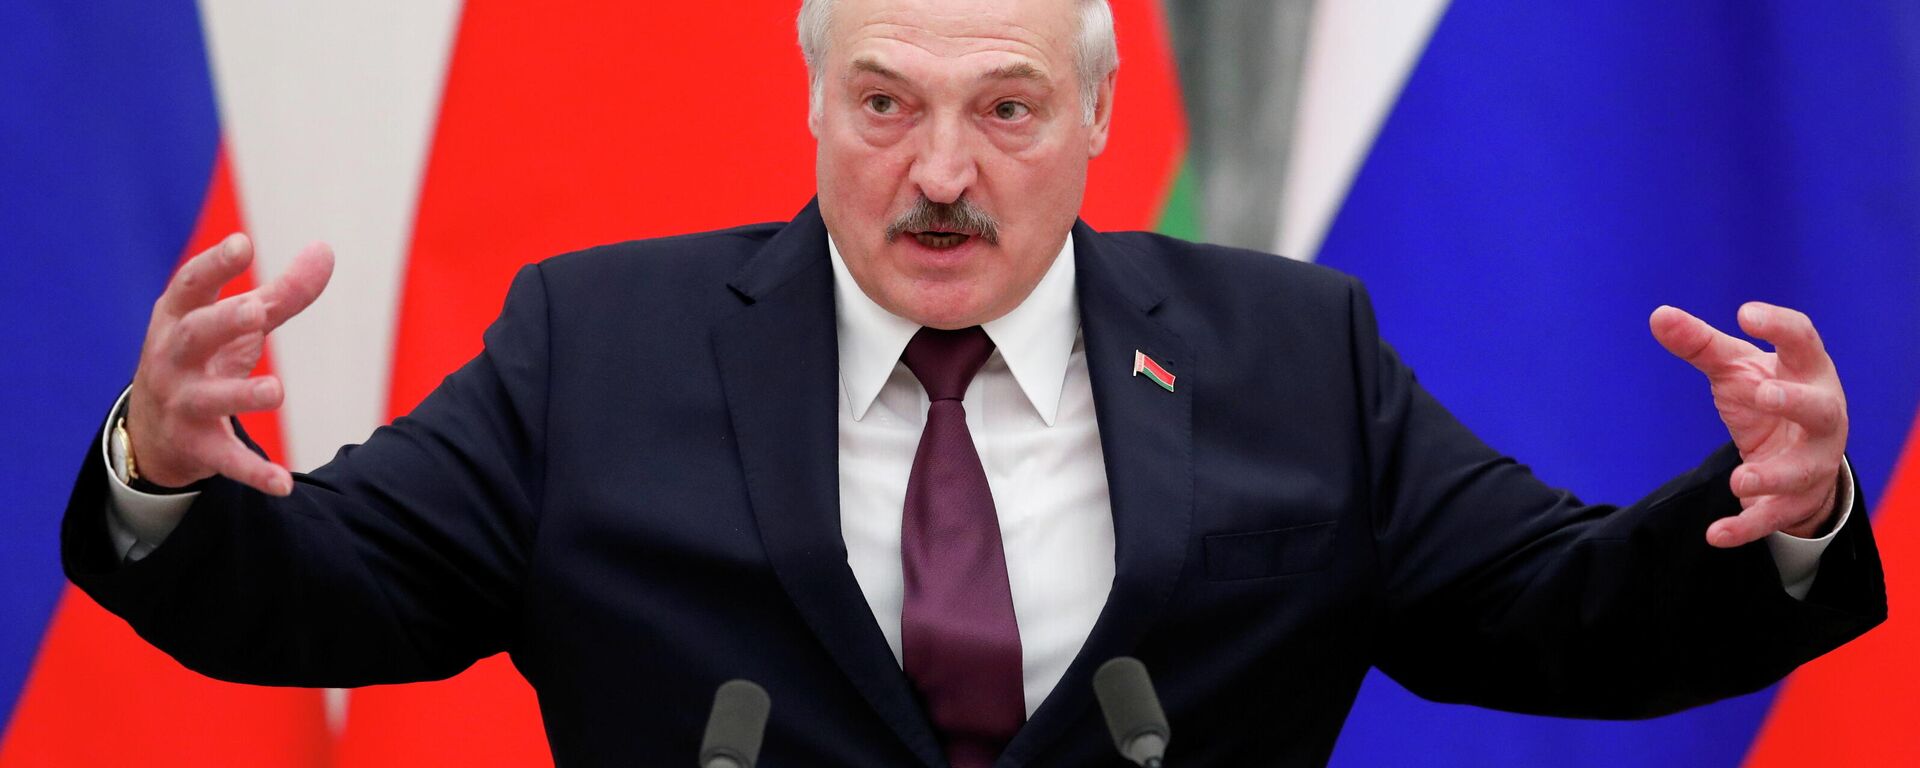 O presidente da Bielorrússia, Alexander Lukashenko, fala durante uma entrevista coletiva após conversas com seu homólogo russo Vladimir Putin no Kremlin em Moscou, Rússia, em 9 de setembro de 2021 - Sputnik Brasil, 1920, 01.12.2021